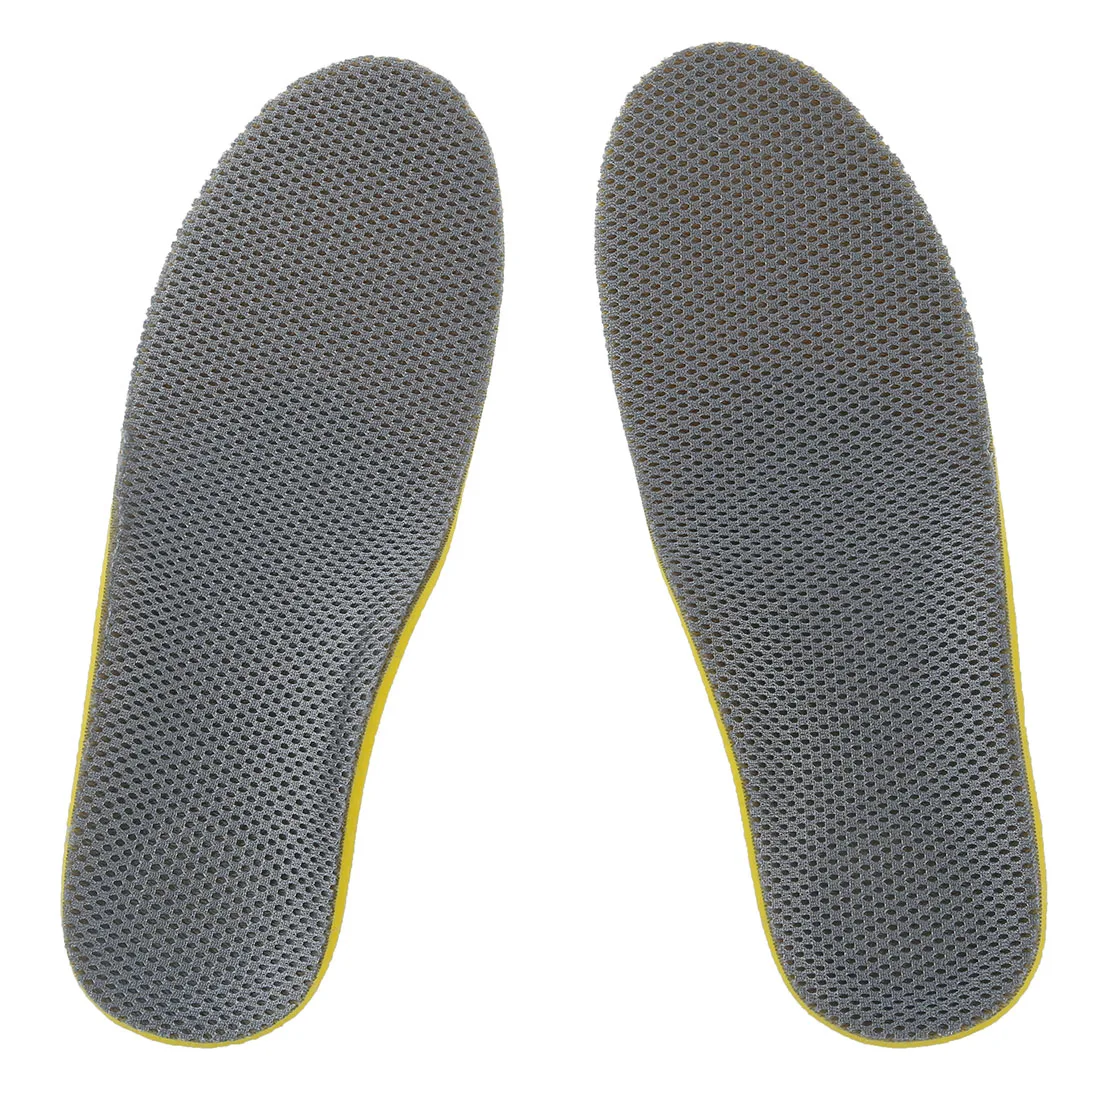 Стильные ортопедические стельки для обуви, высокие стельки для поддержки свода стопы, желтые+ серые